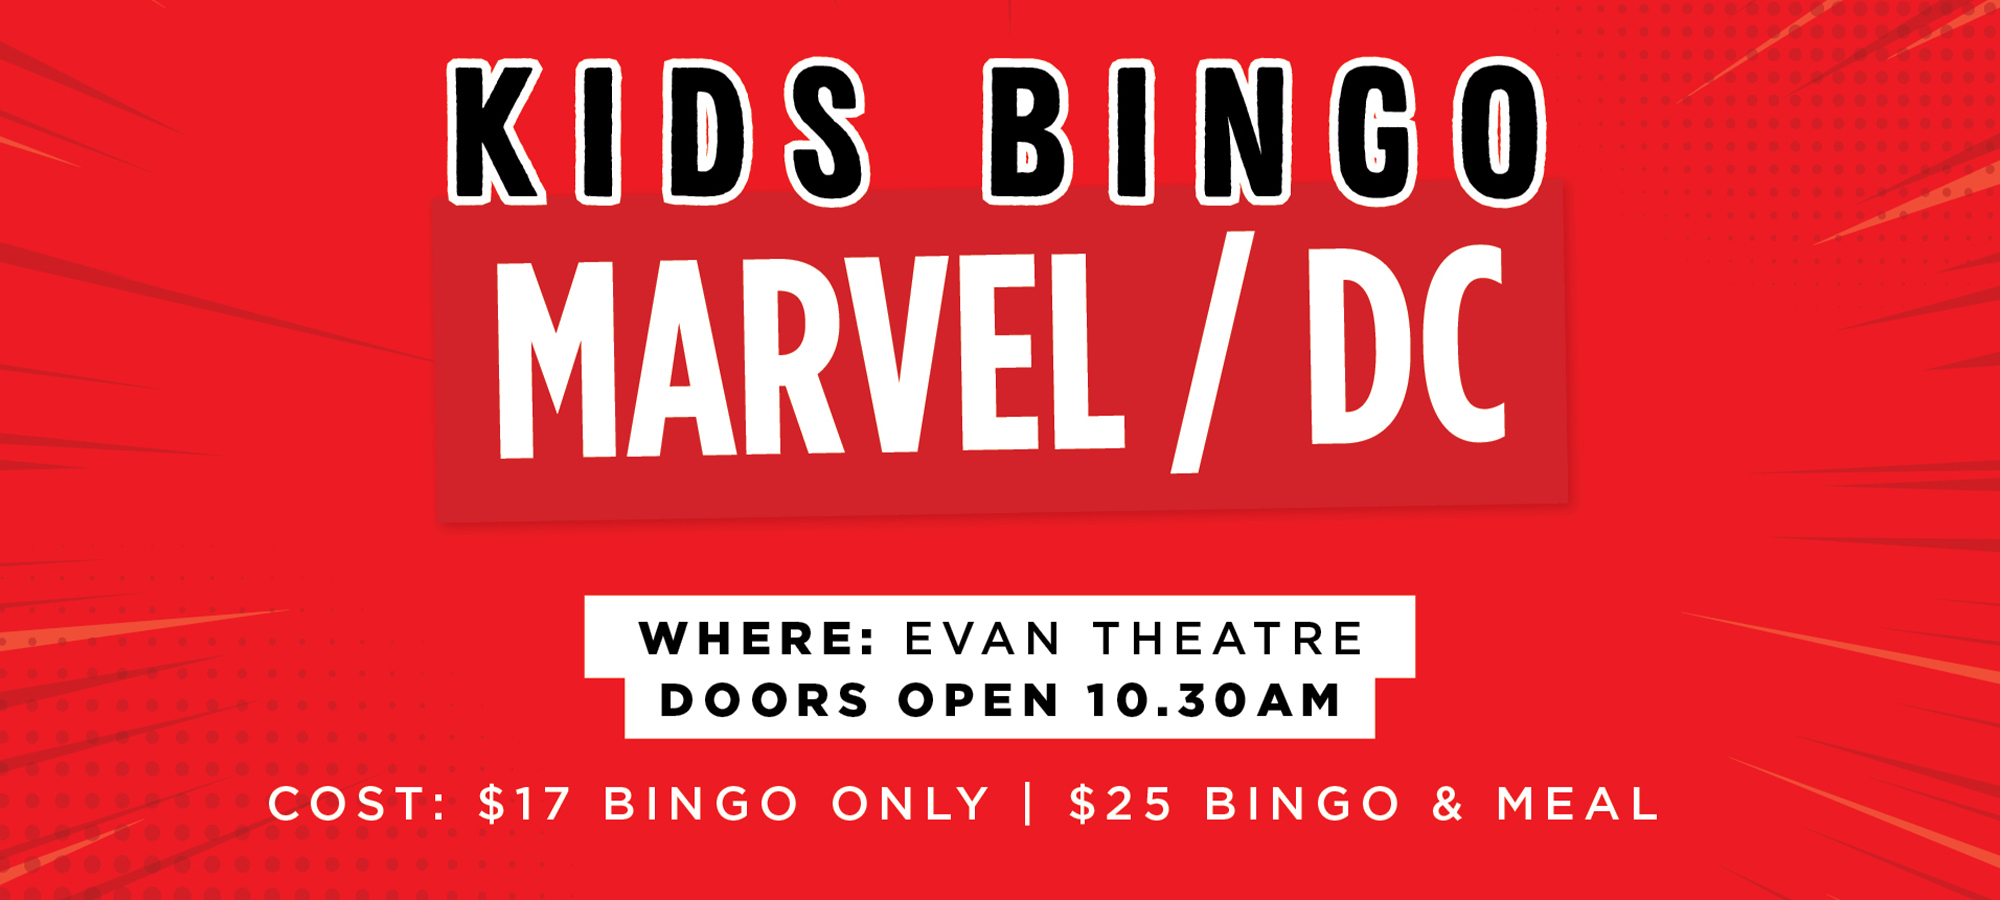 Kids Bingo: Marvel/DC Theme